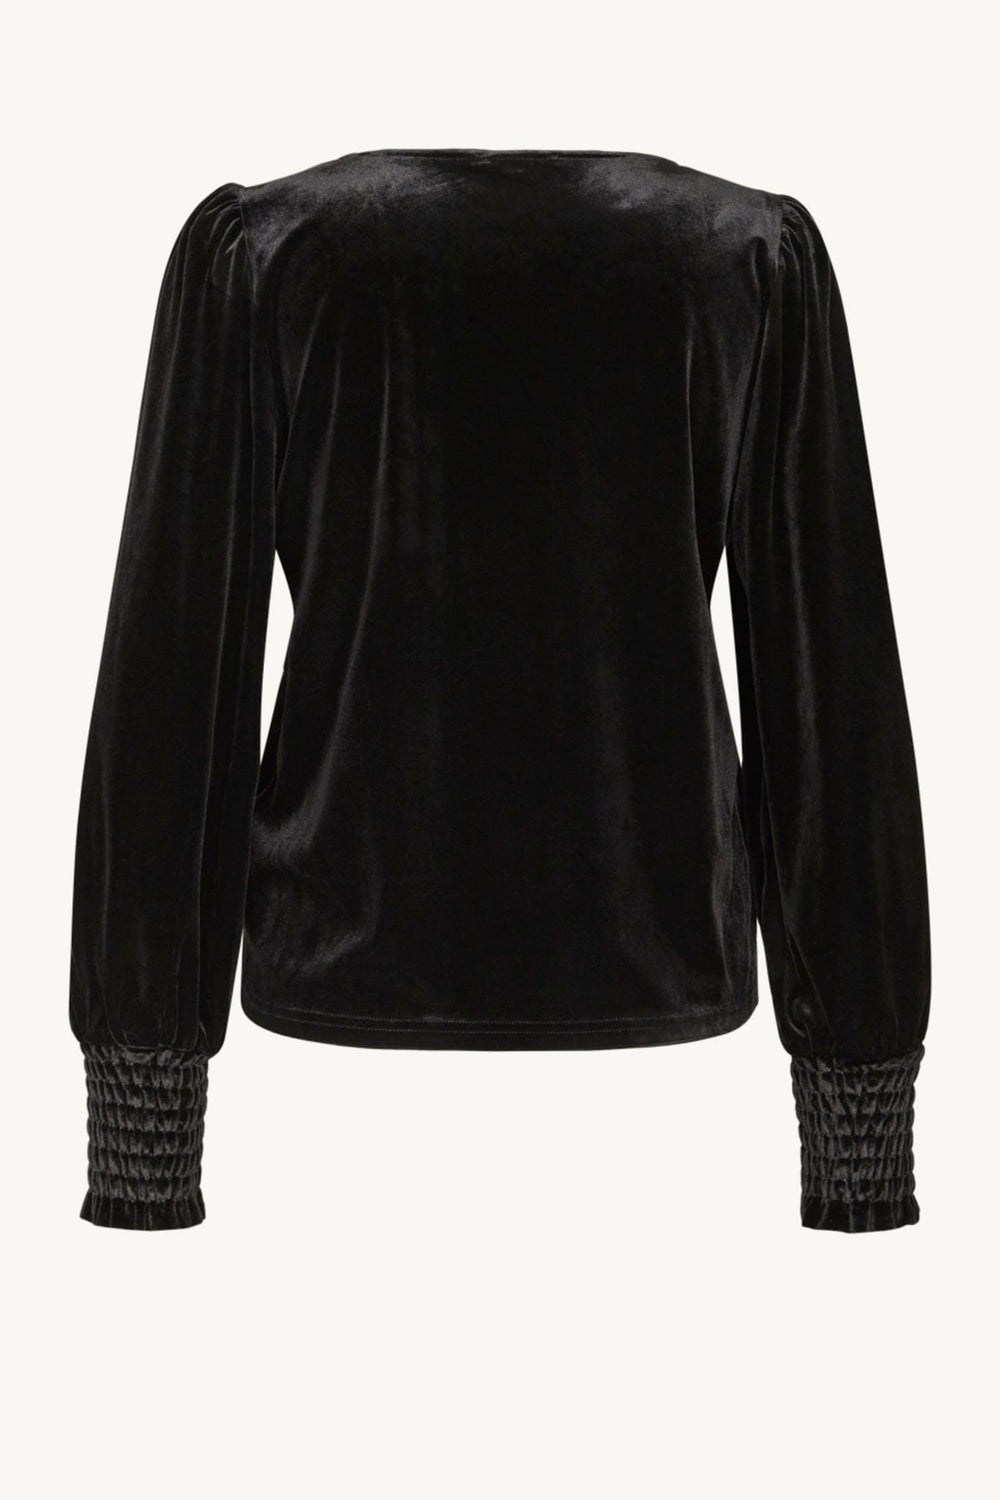 Alyssia-Cw - Blouse Black | Skjorter og bluser | Smuk - Dameklær på nett